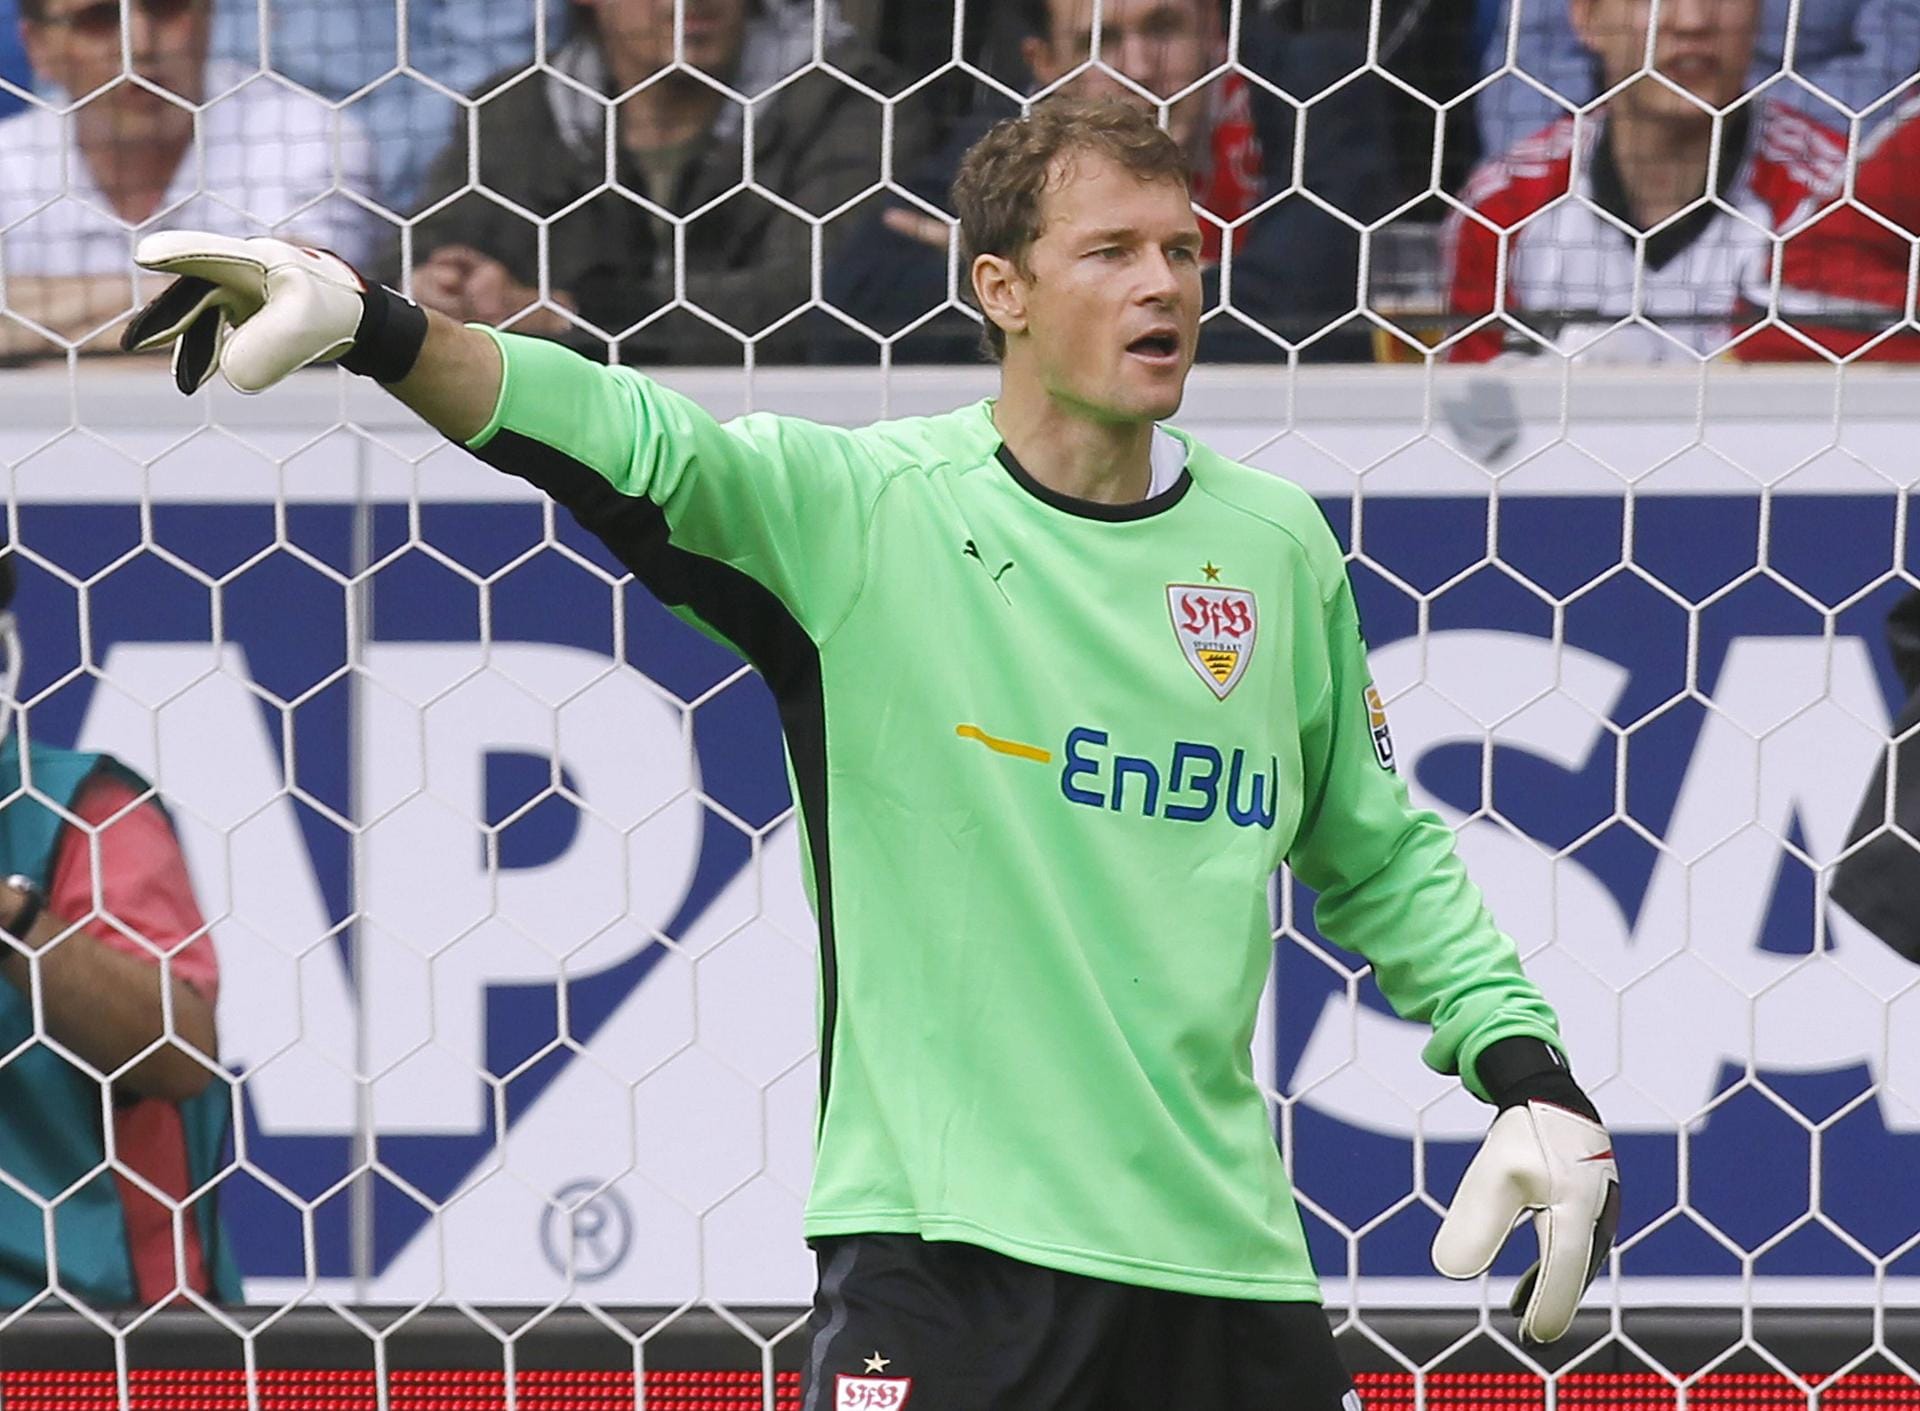 Jens Lehmann: Der ehemalige Torhüter hütete von 2008 bis 2010 das Tor des VfB Stuttgart. Lehmann erwarb später eine Trainer-Lizenz und fungierte als Co-Trainer bei Arsenal sowie Augsburg und war Teil des Aufsichtsrats von Hauptstadtklub Hertha BSC.